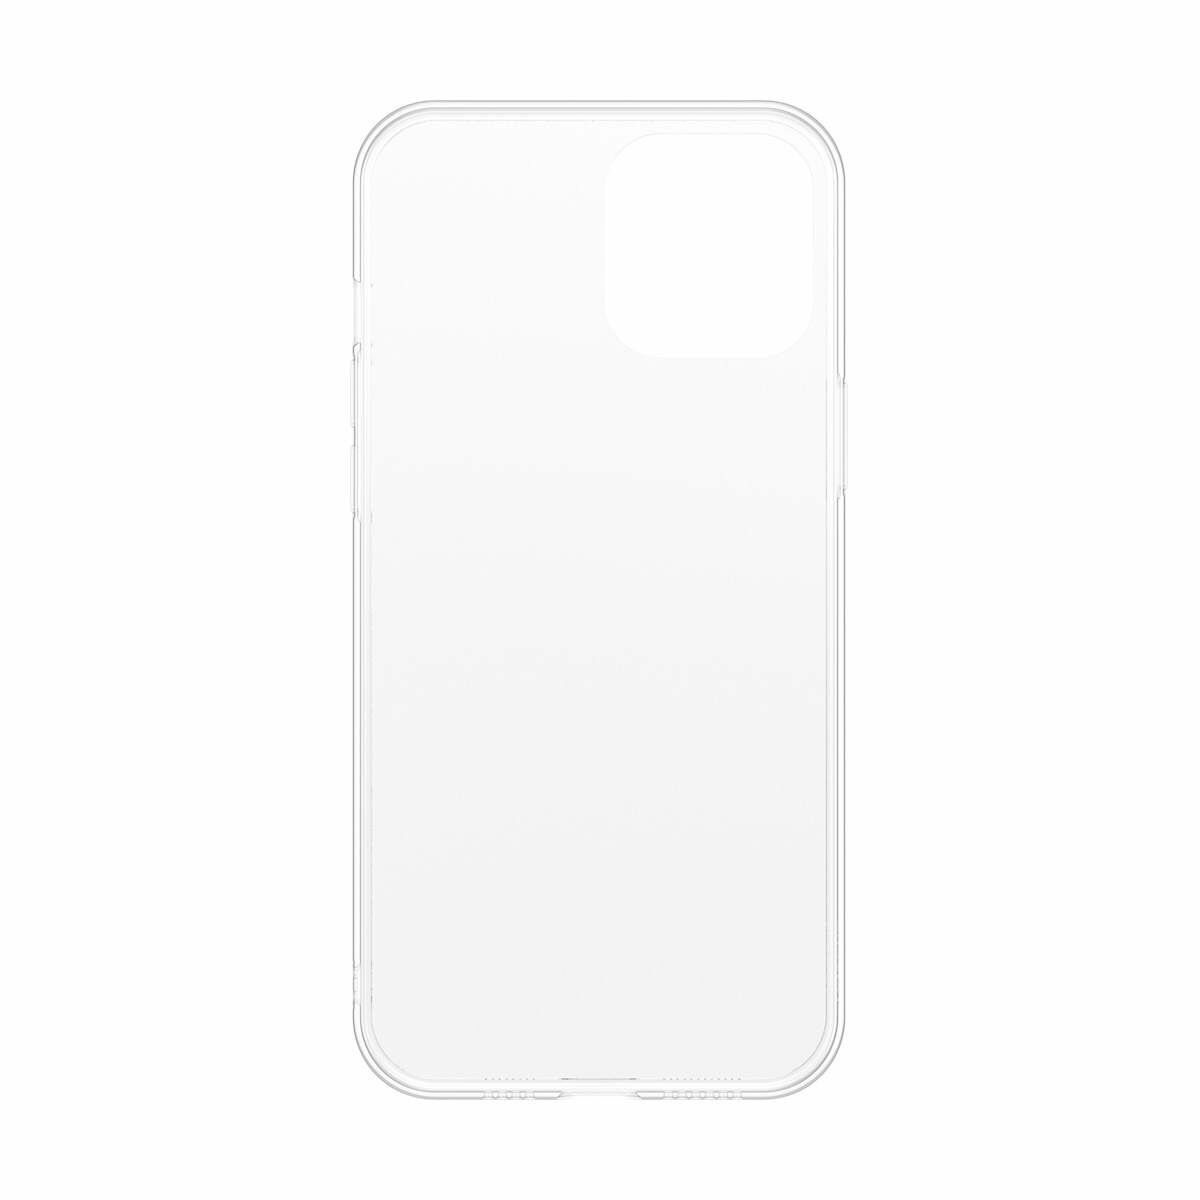 Kép 2/11 - Baseus iPhone 12/12 Pro tok, Frosted Glass, fehér (WIAPIPH61P-WS02)